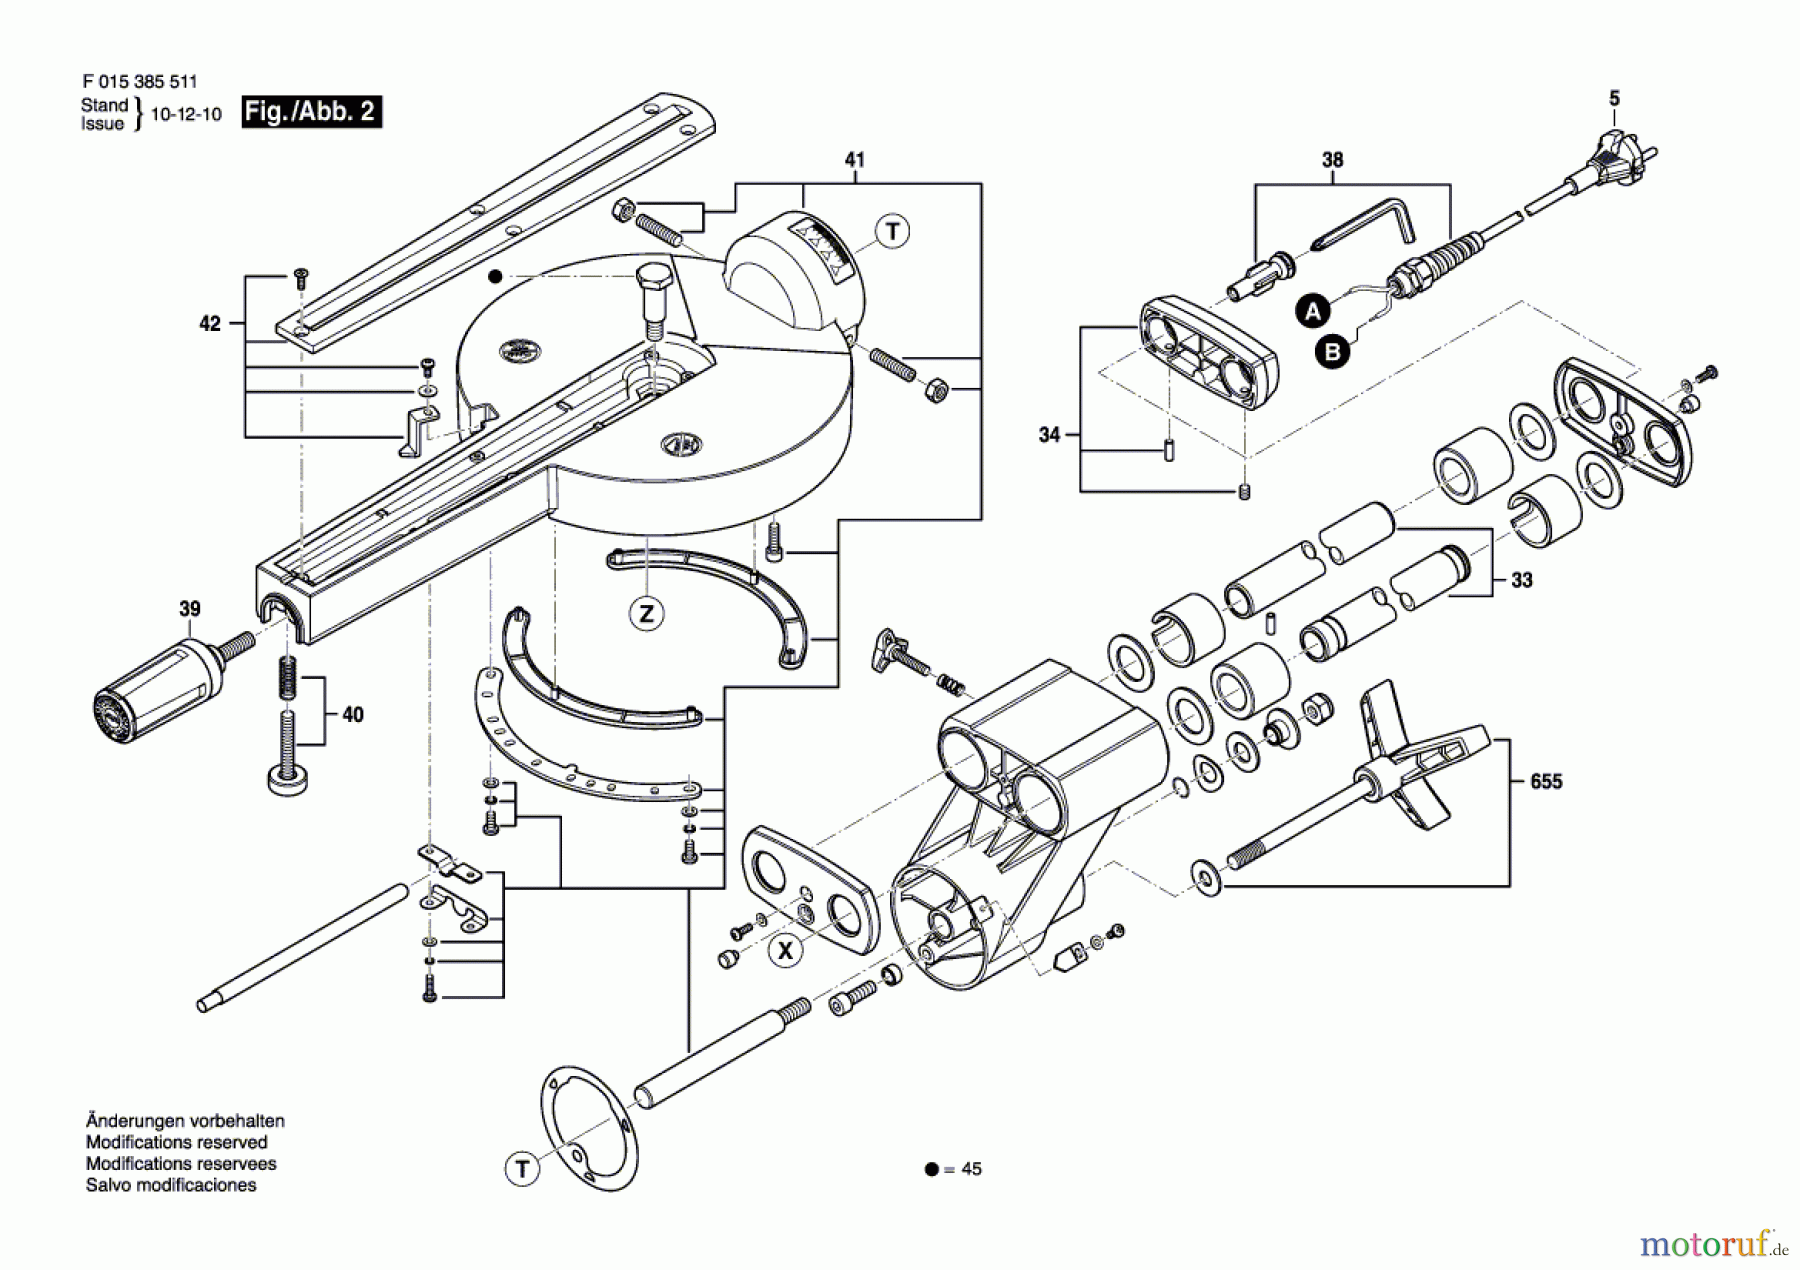  Bosch Werkzeug Kapp-/Zugsäge 3855 Seite 2